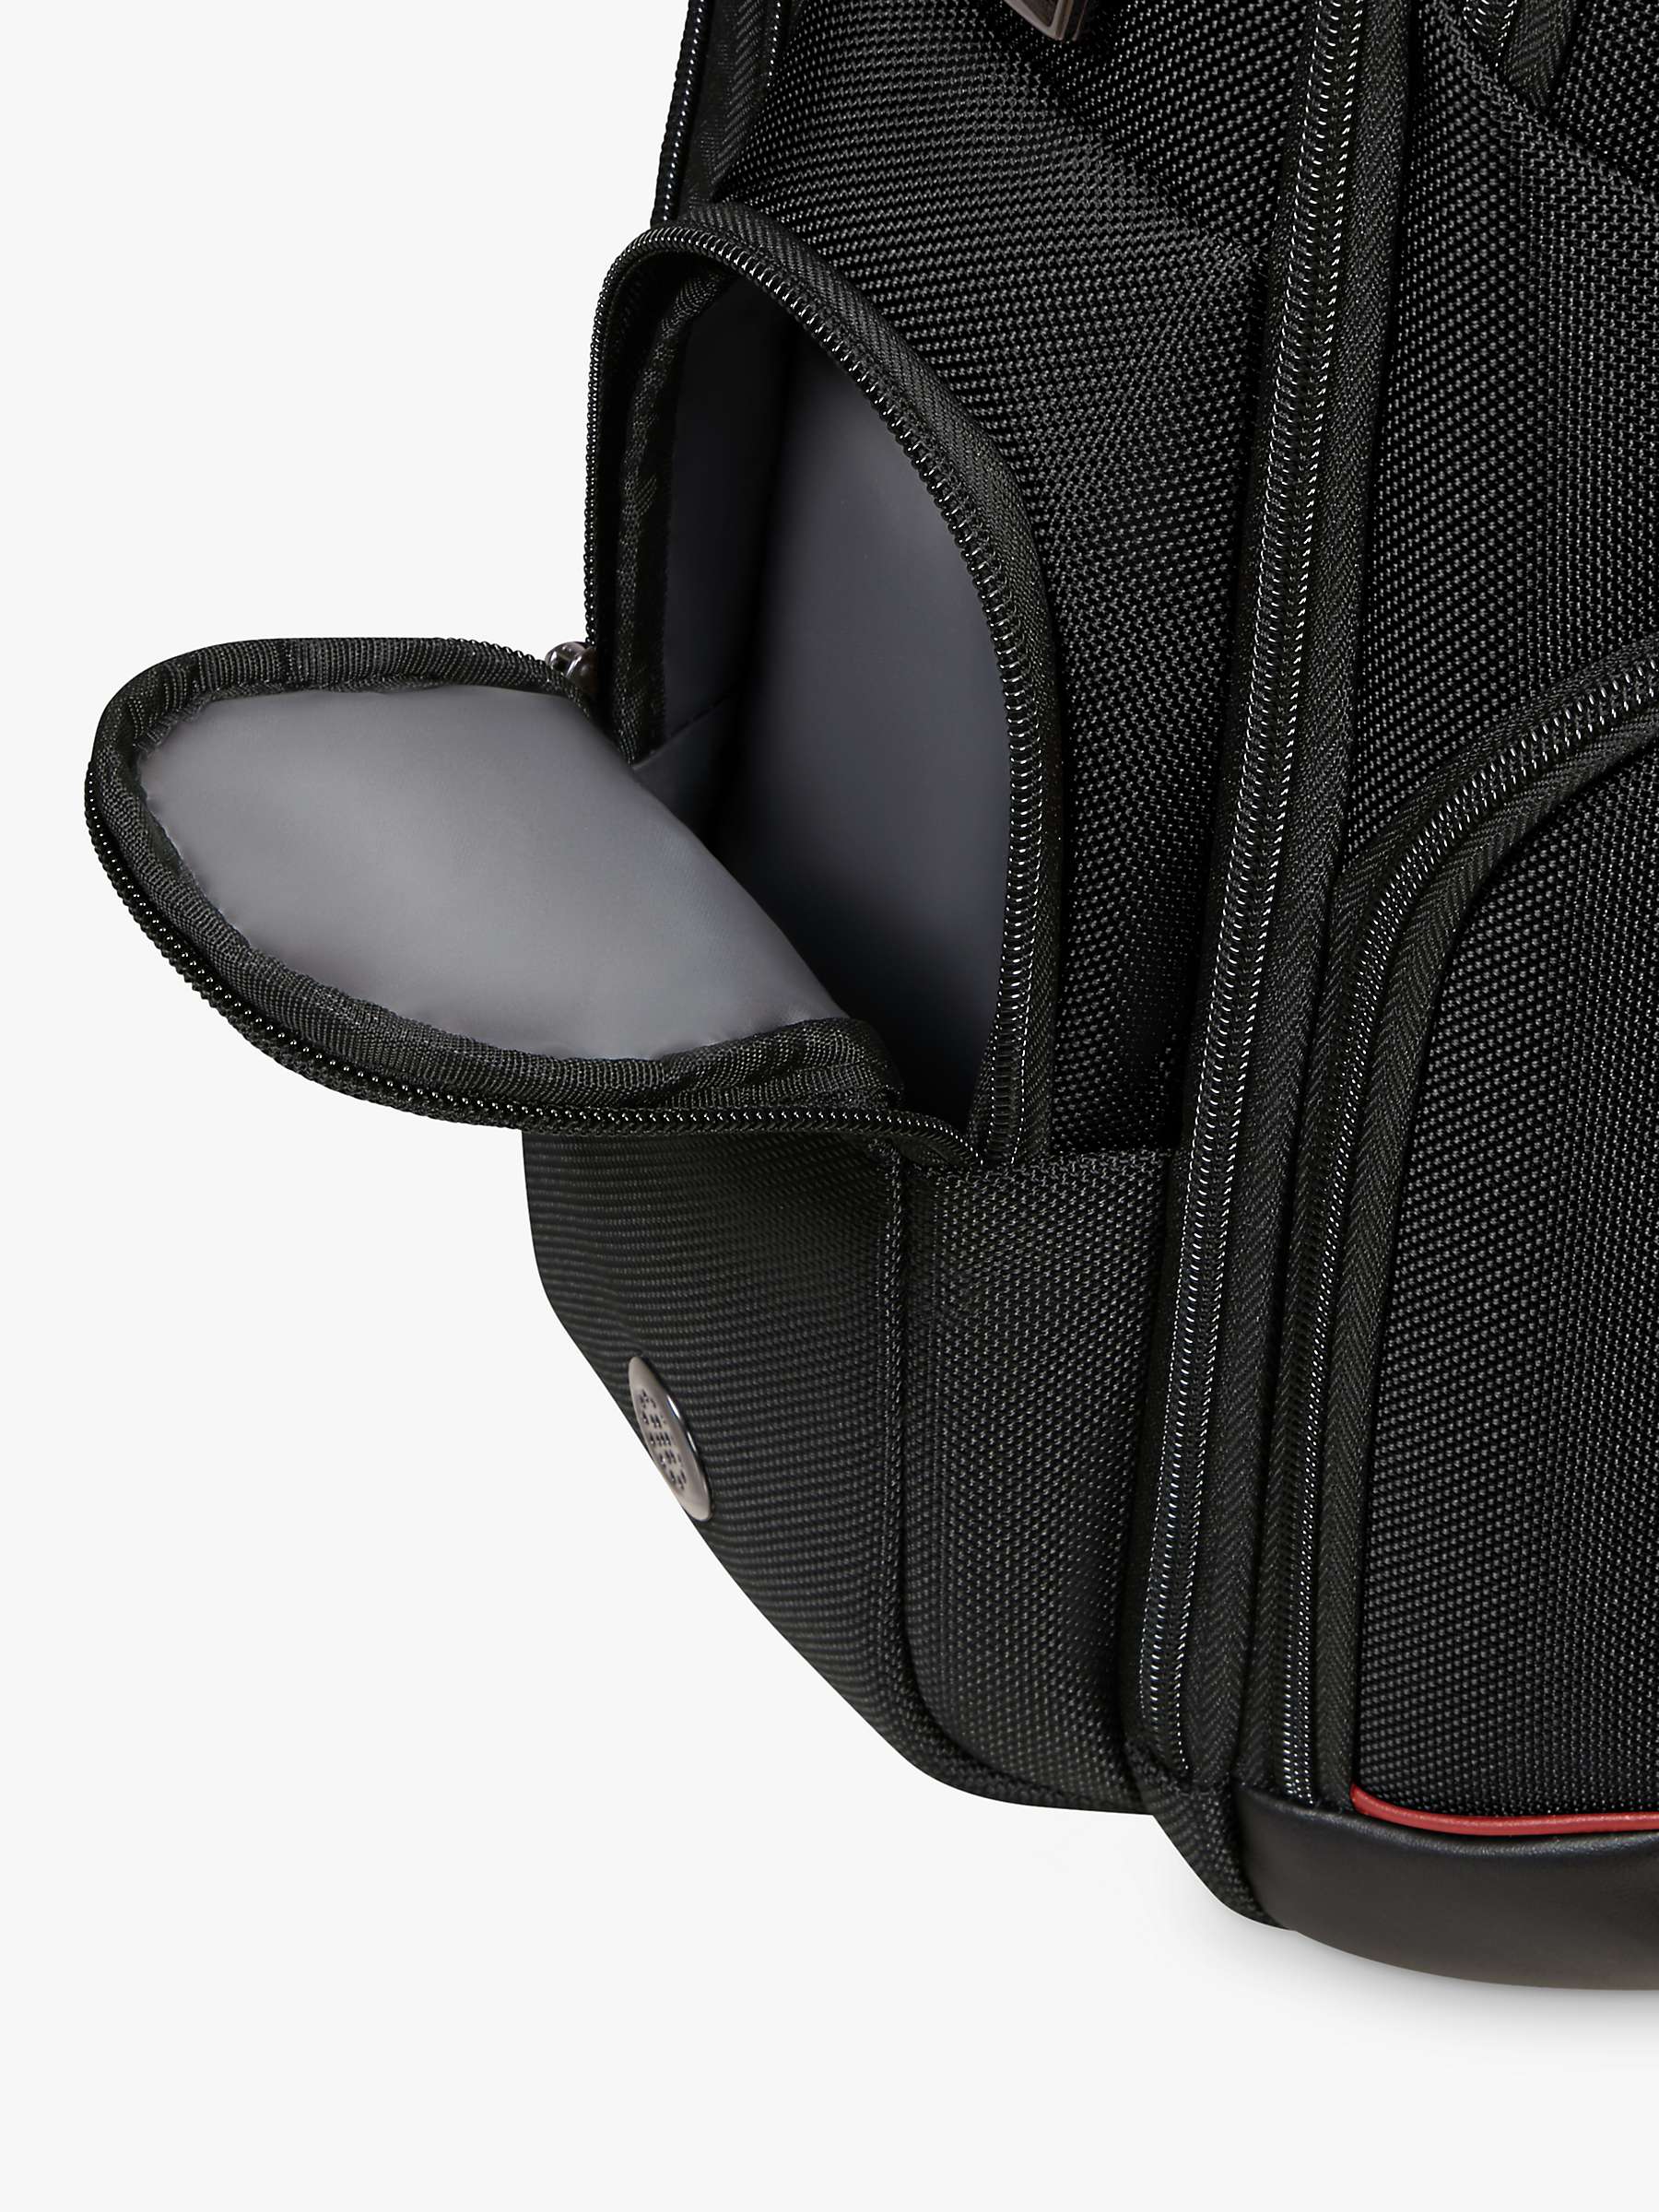 Buy Samsonite Pro-DLX 6 15.6" Laptop Backpack Online at johnlewis.com